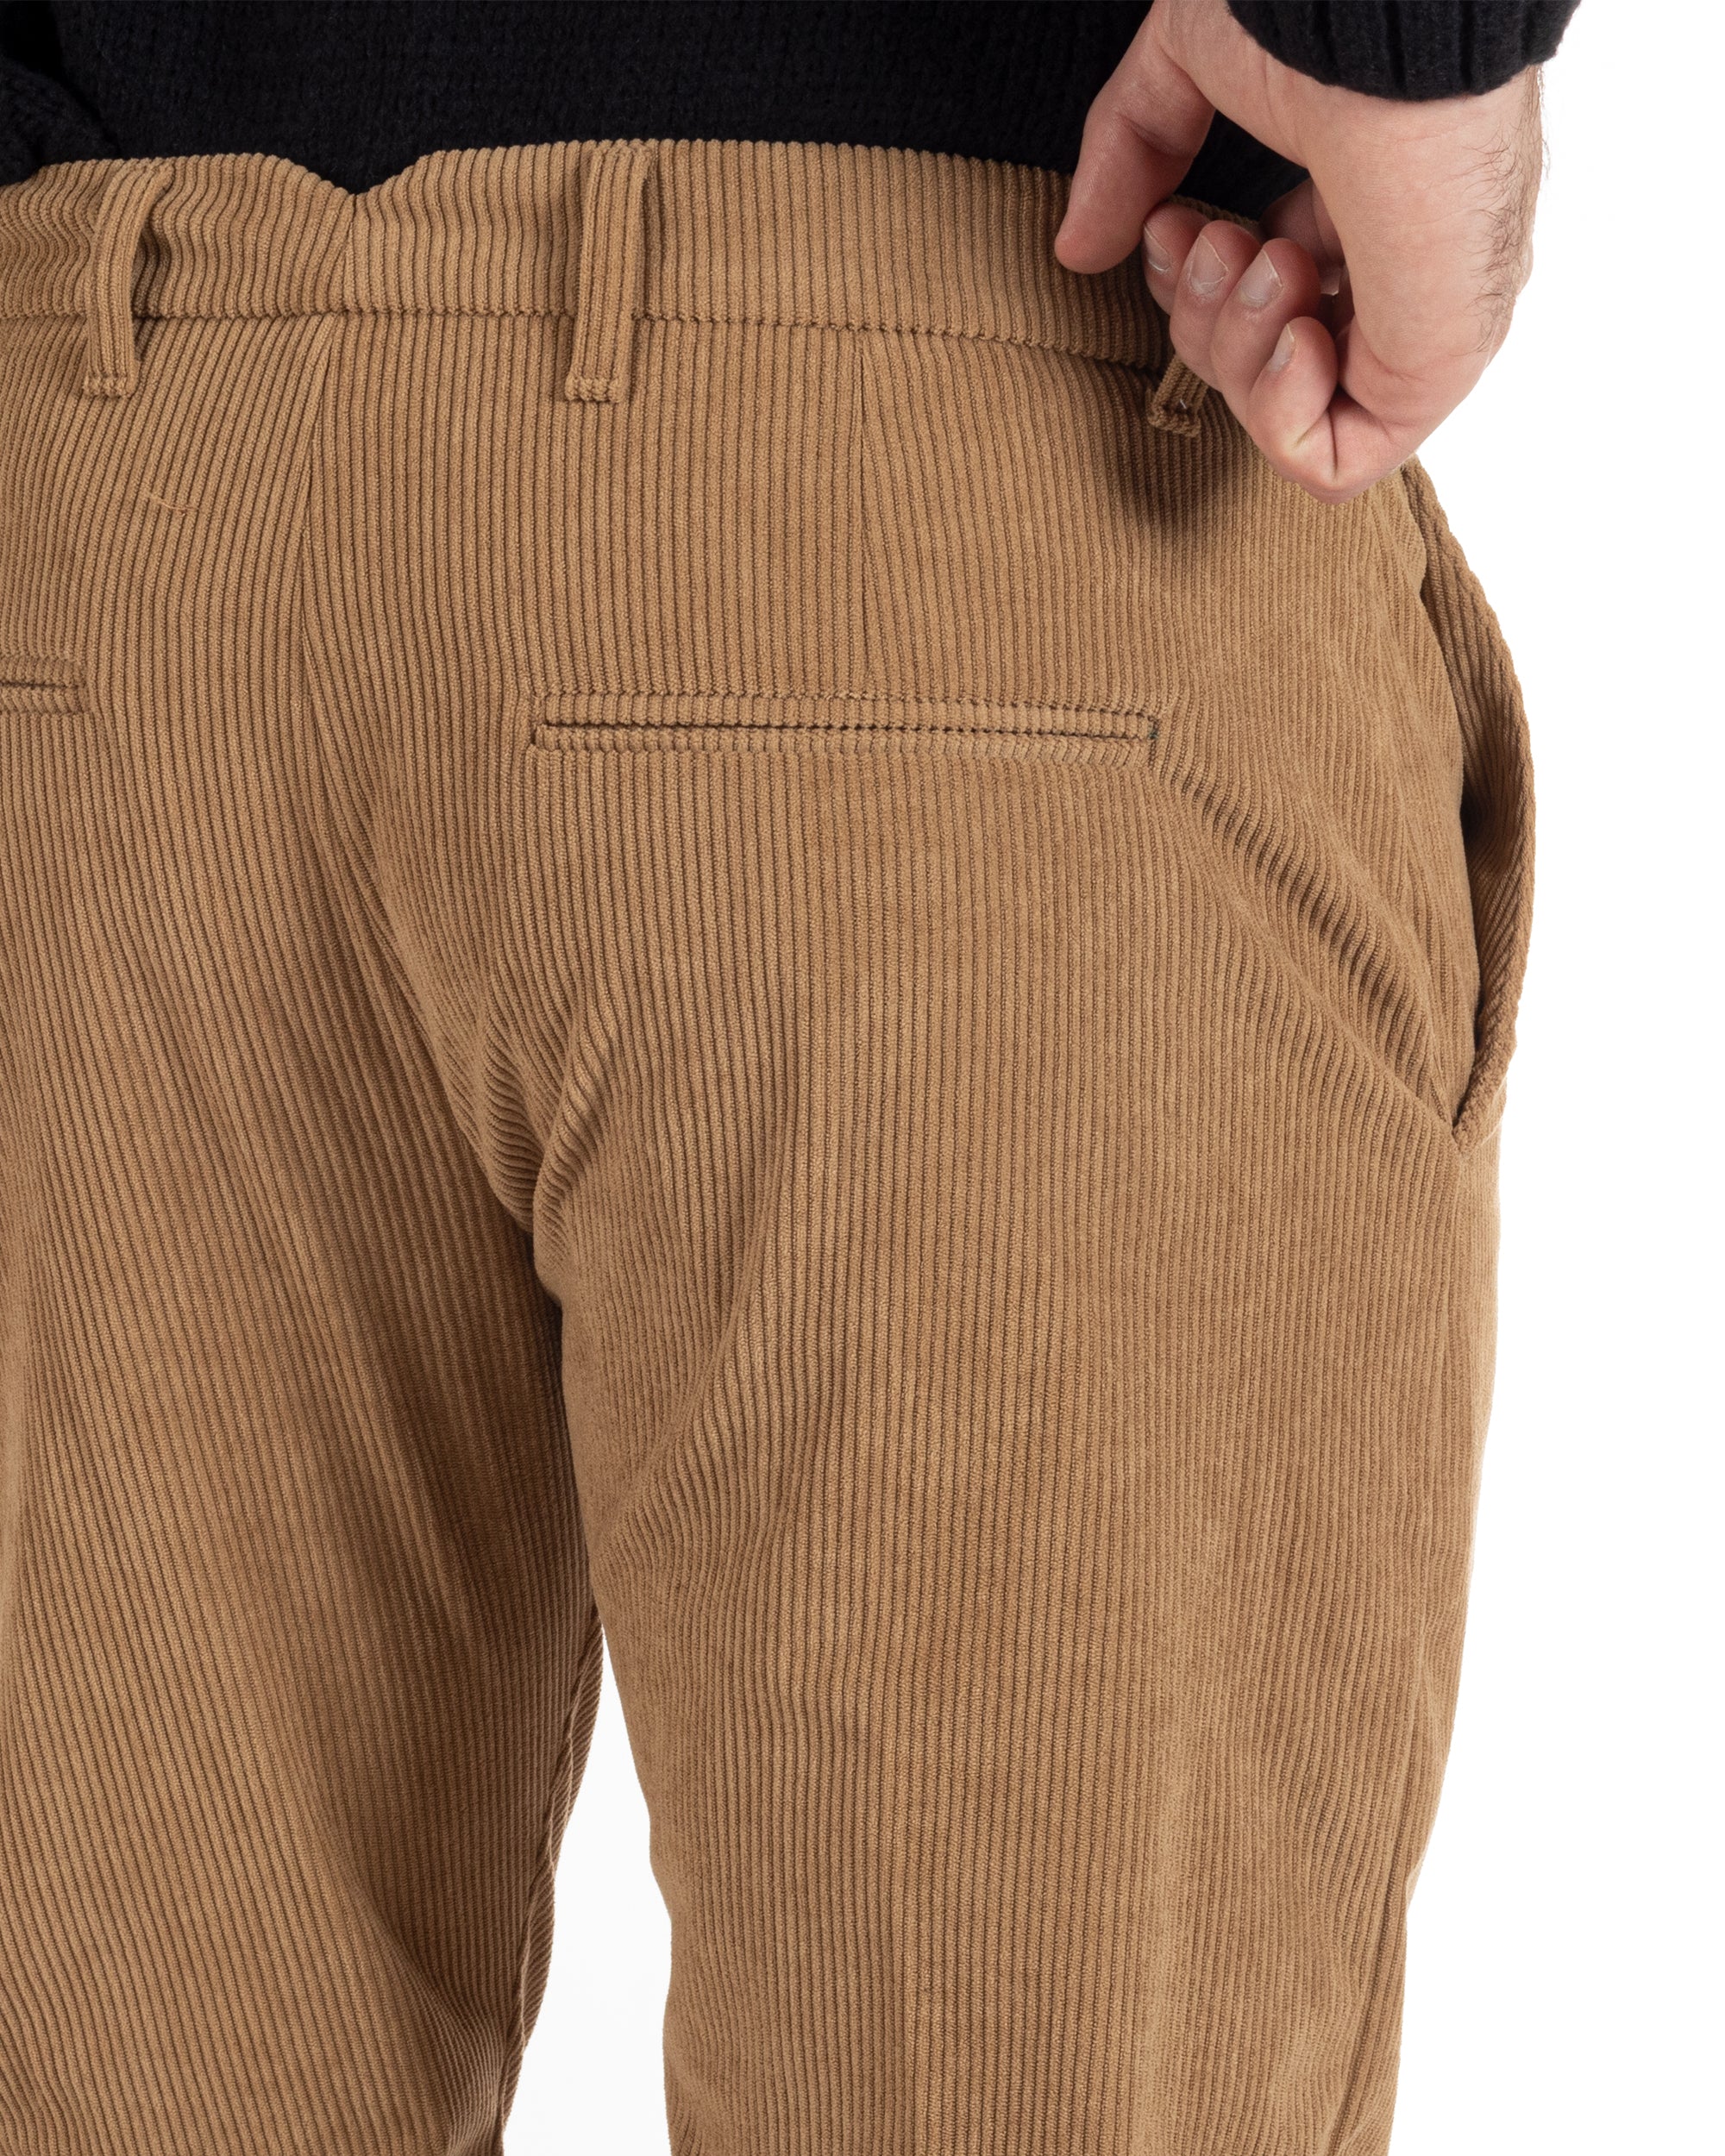 Pantaloni Uomo Tasca America Classico Velluto Costine Camel Casual GIOSAL-P6001A